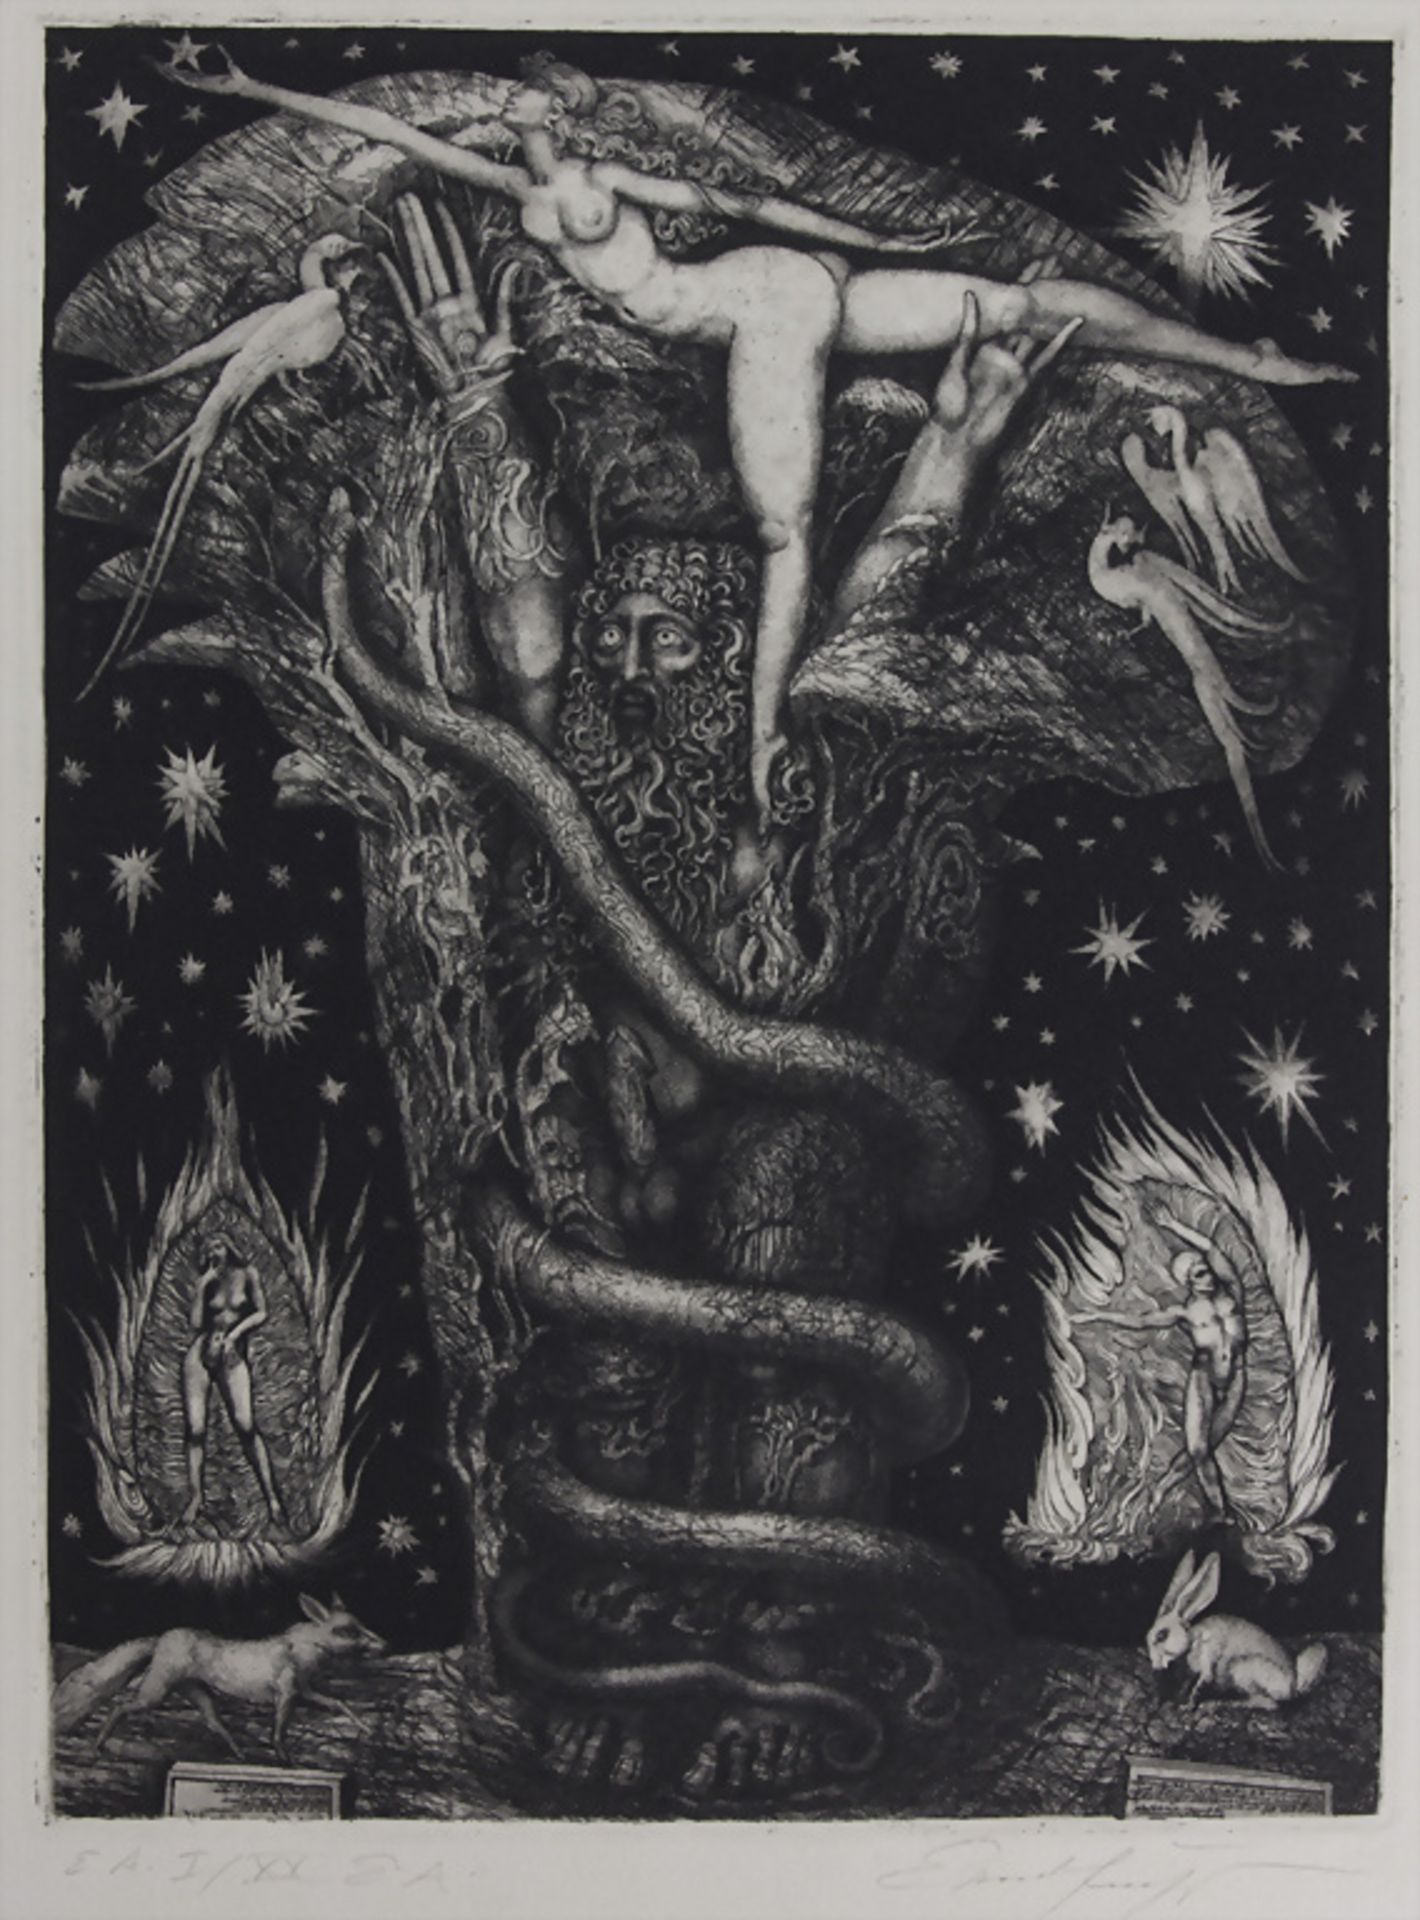 Phantastischer Realismus, Ernst Fuchs (1930-2015), 'Adams Traum' / 'Adam's dream', 1969